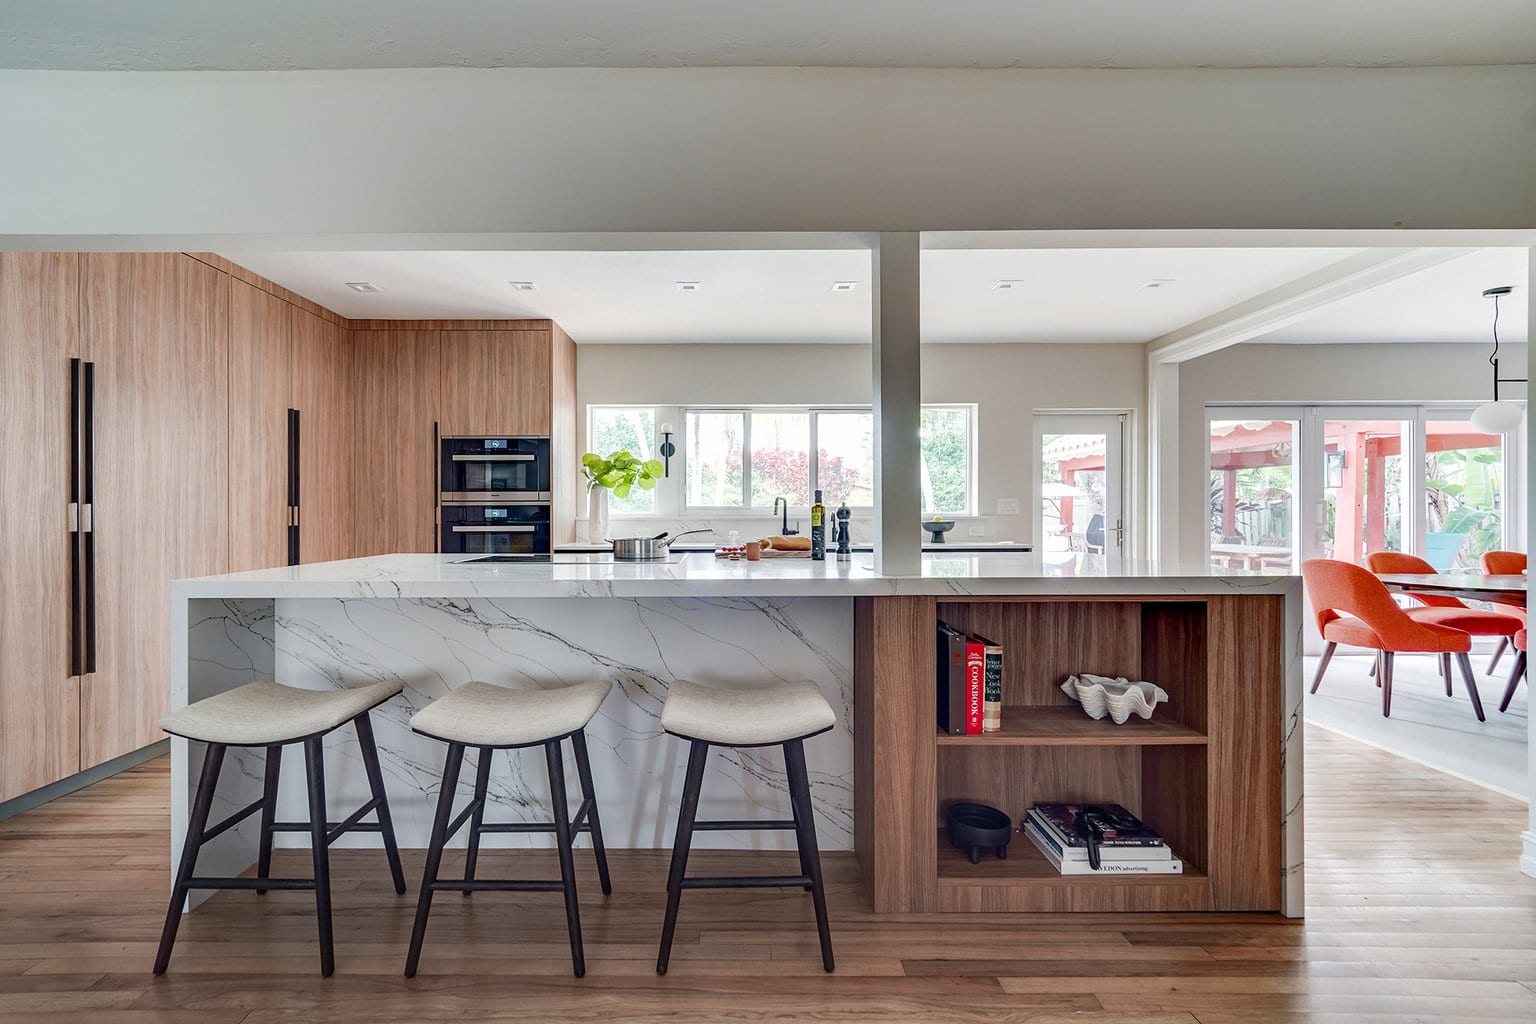 Modern luxury kitchen by STUDIO 818 interior design & build management: kitchen island view